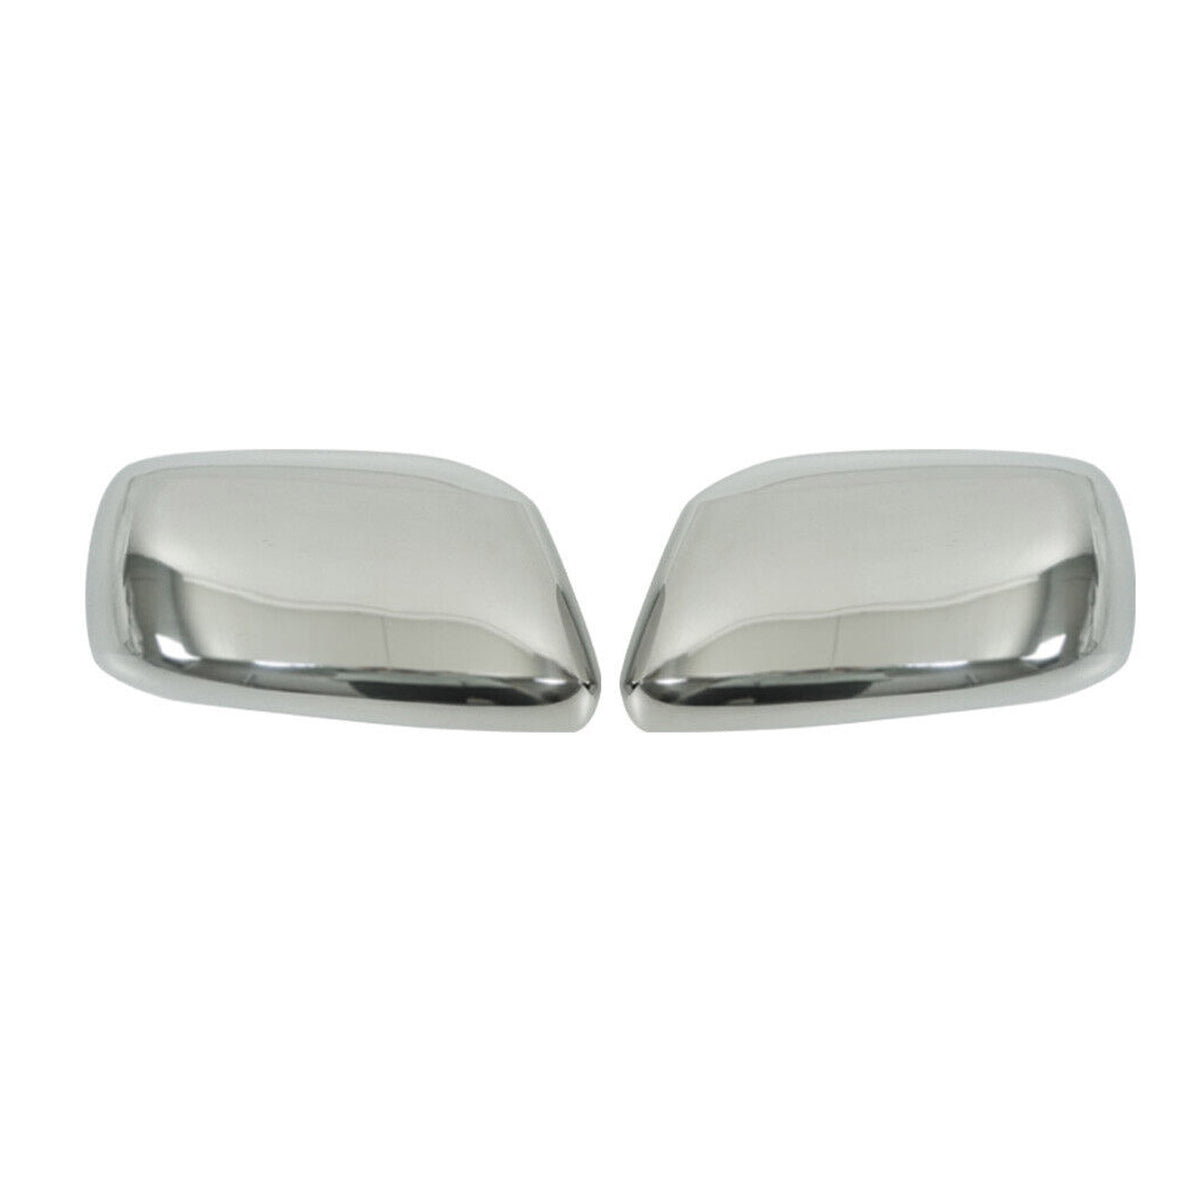 Spiegelkappen Spiegelabdeckung für Nissan Pathfinder 2005-2012 Edelstahl Silber